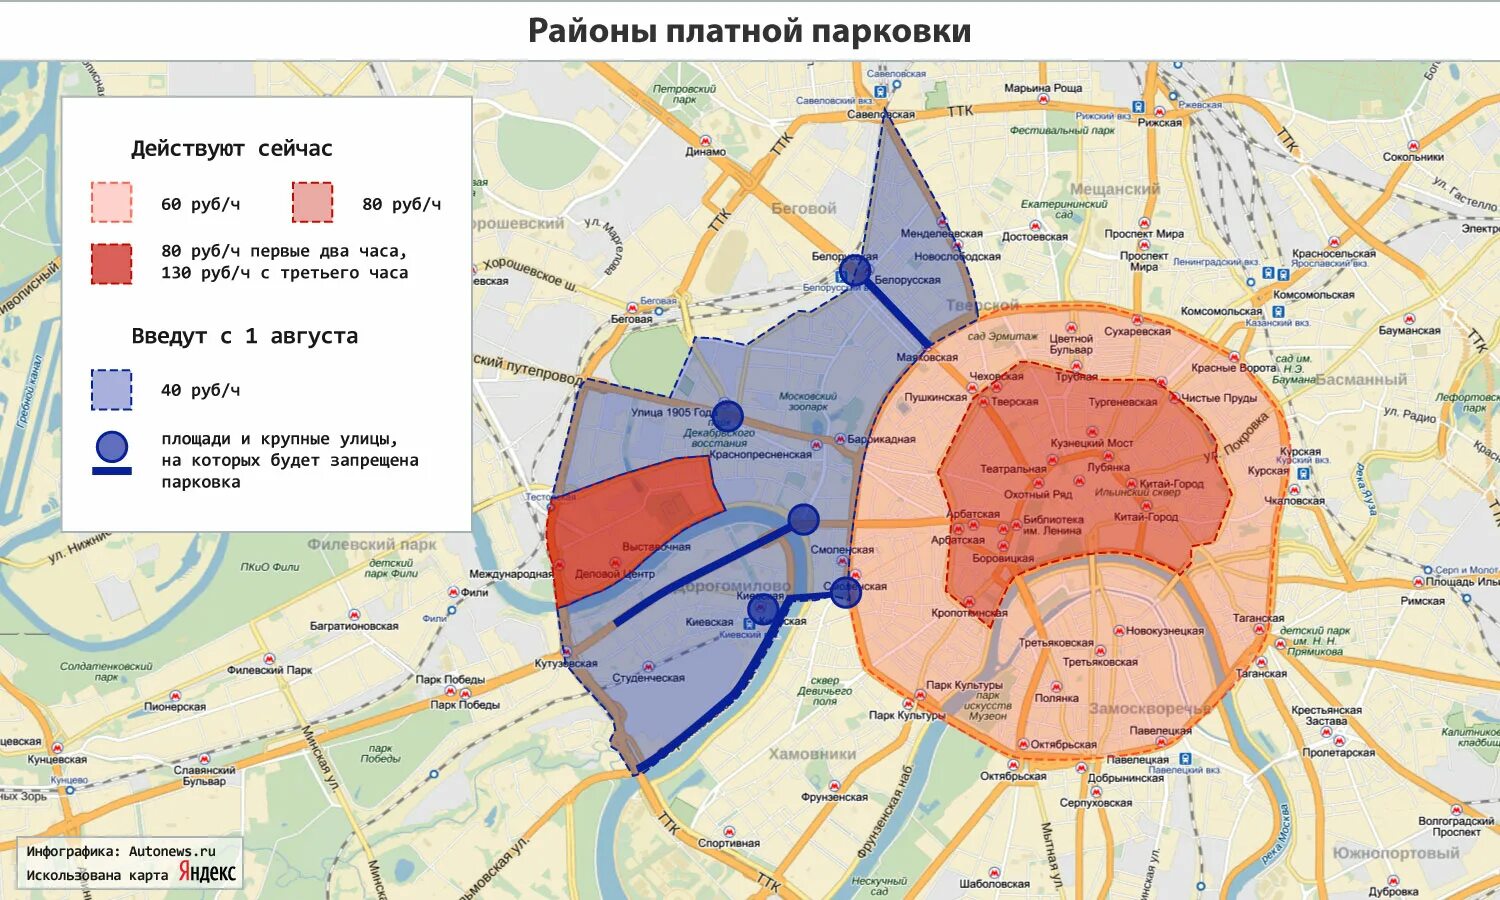 Зона платной парковки 304 Чебоксары. Парковочные зоны в Москве на карте. Зона резидентской парковки Хамовники. Зона платной парковки 206 Чебоксары.